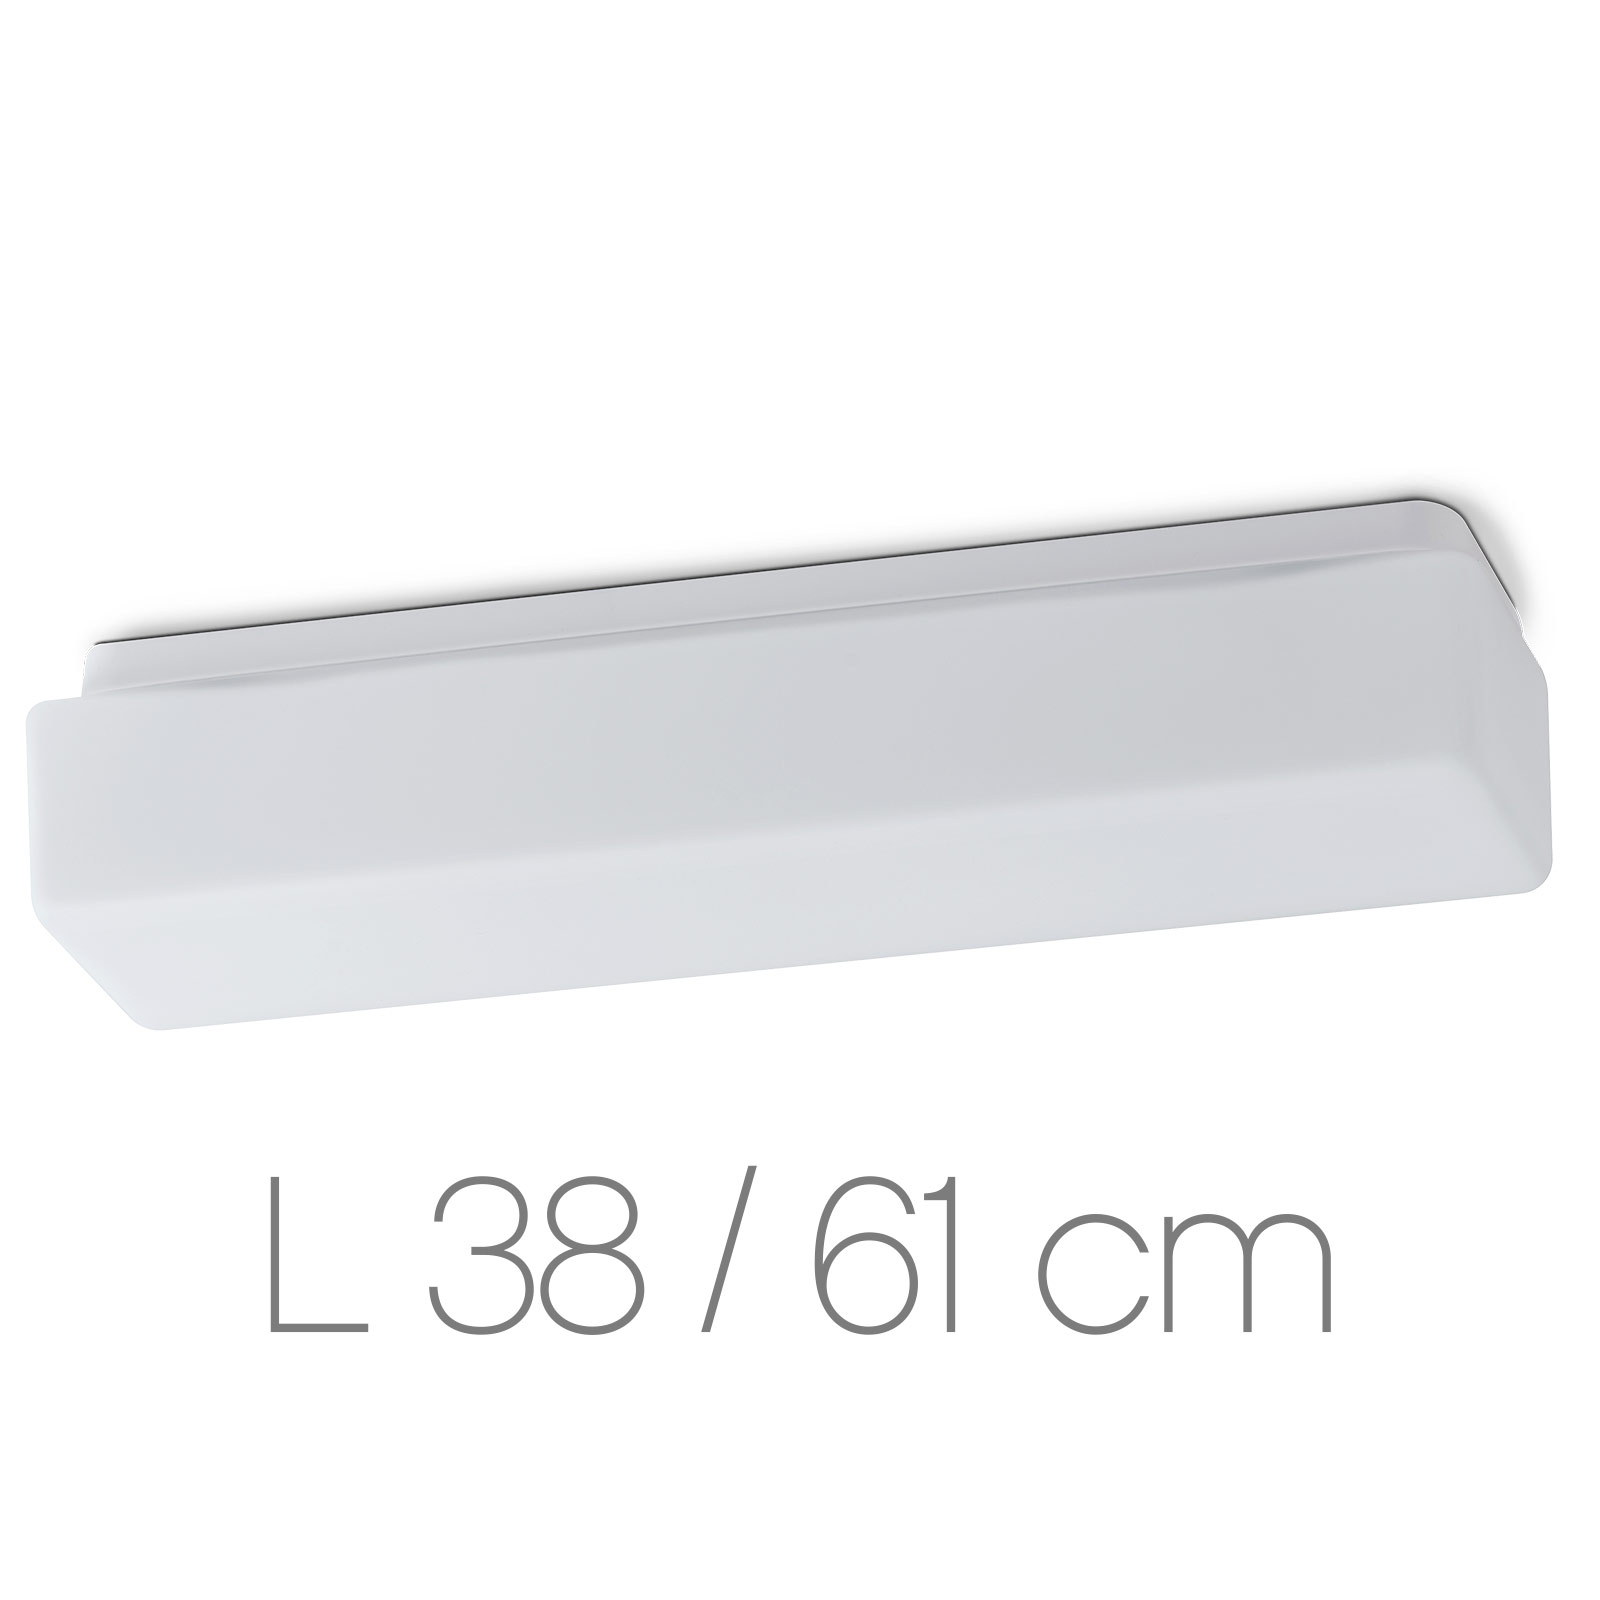 Längliche Opalglas-Deckenleuchte SYLVA mit Balken-Profil, 38 / 61 cm